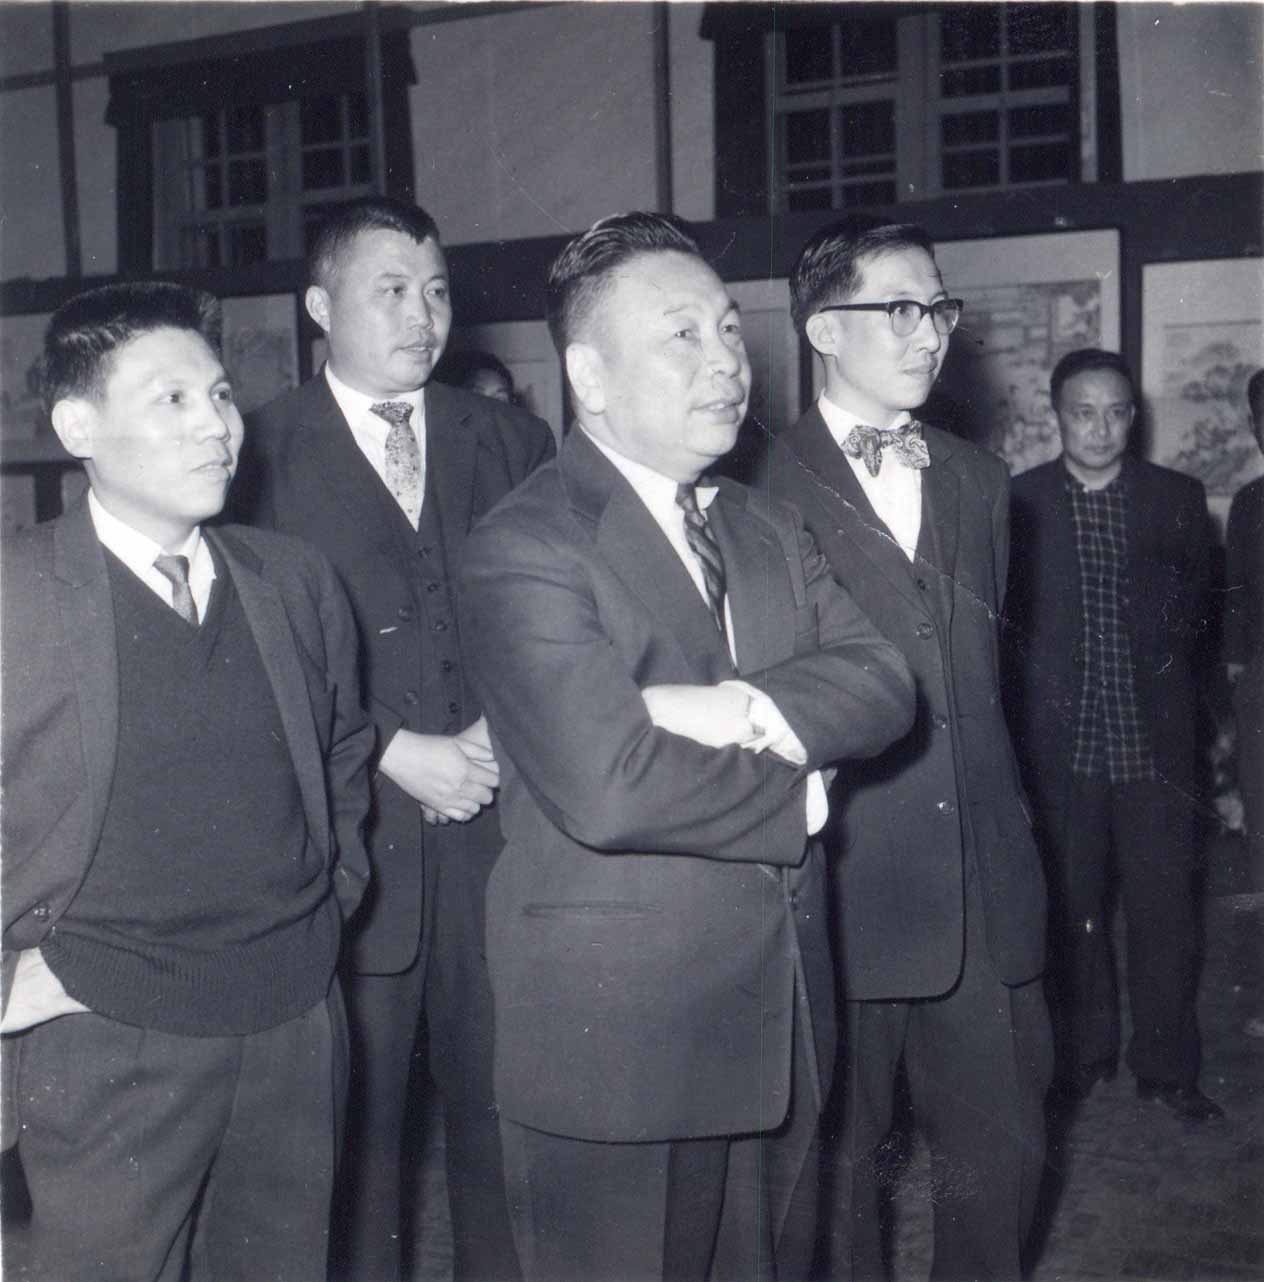 蔣經國參觀麗水精舍的畫展(1959年11月21日)